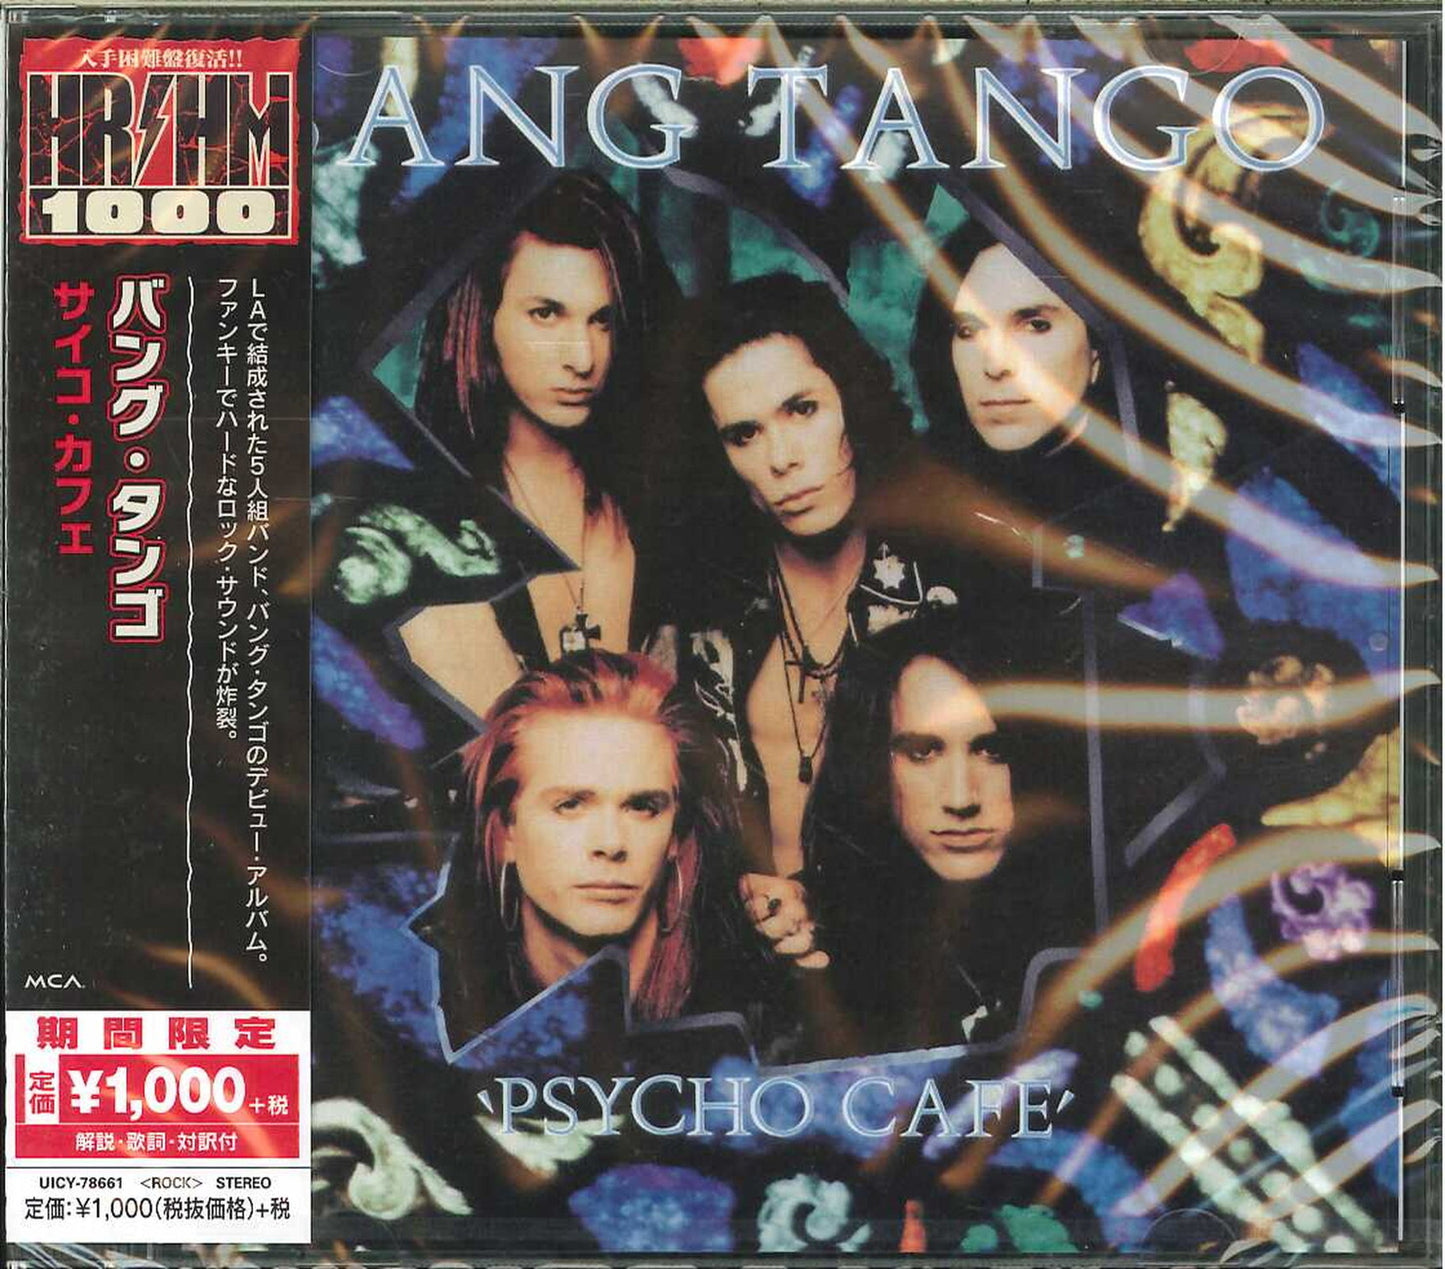 Bang Tango - Psycho Caf? - Japan  CD Limited Edition